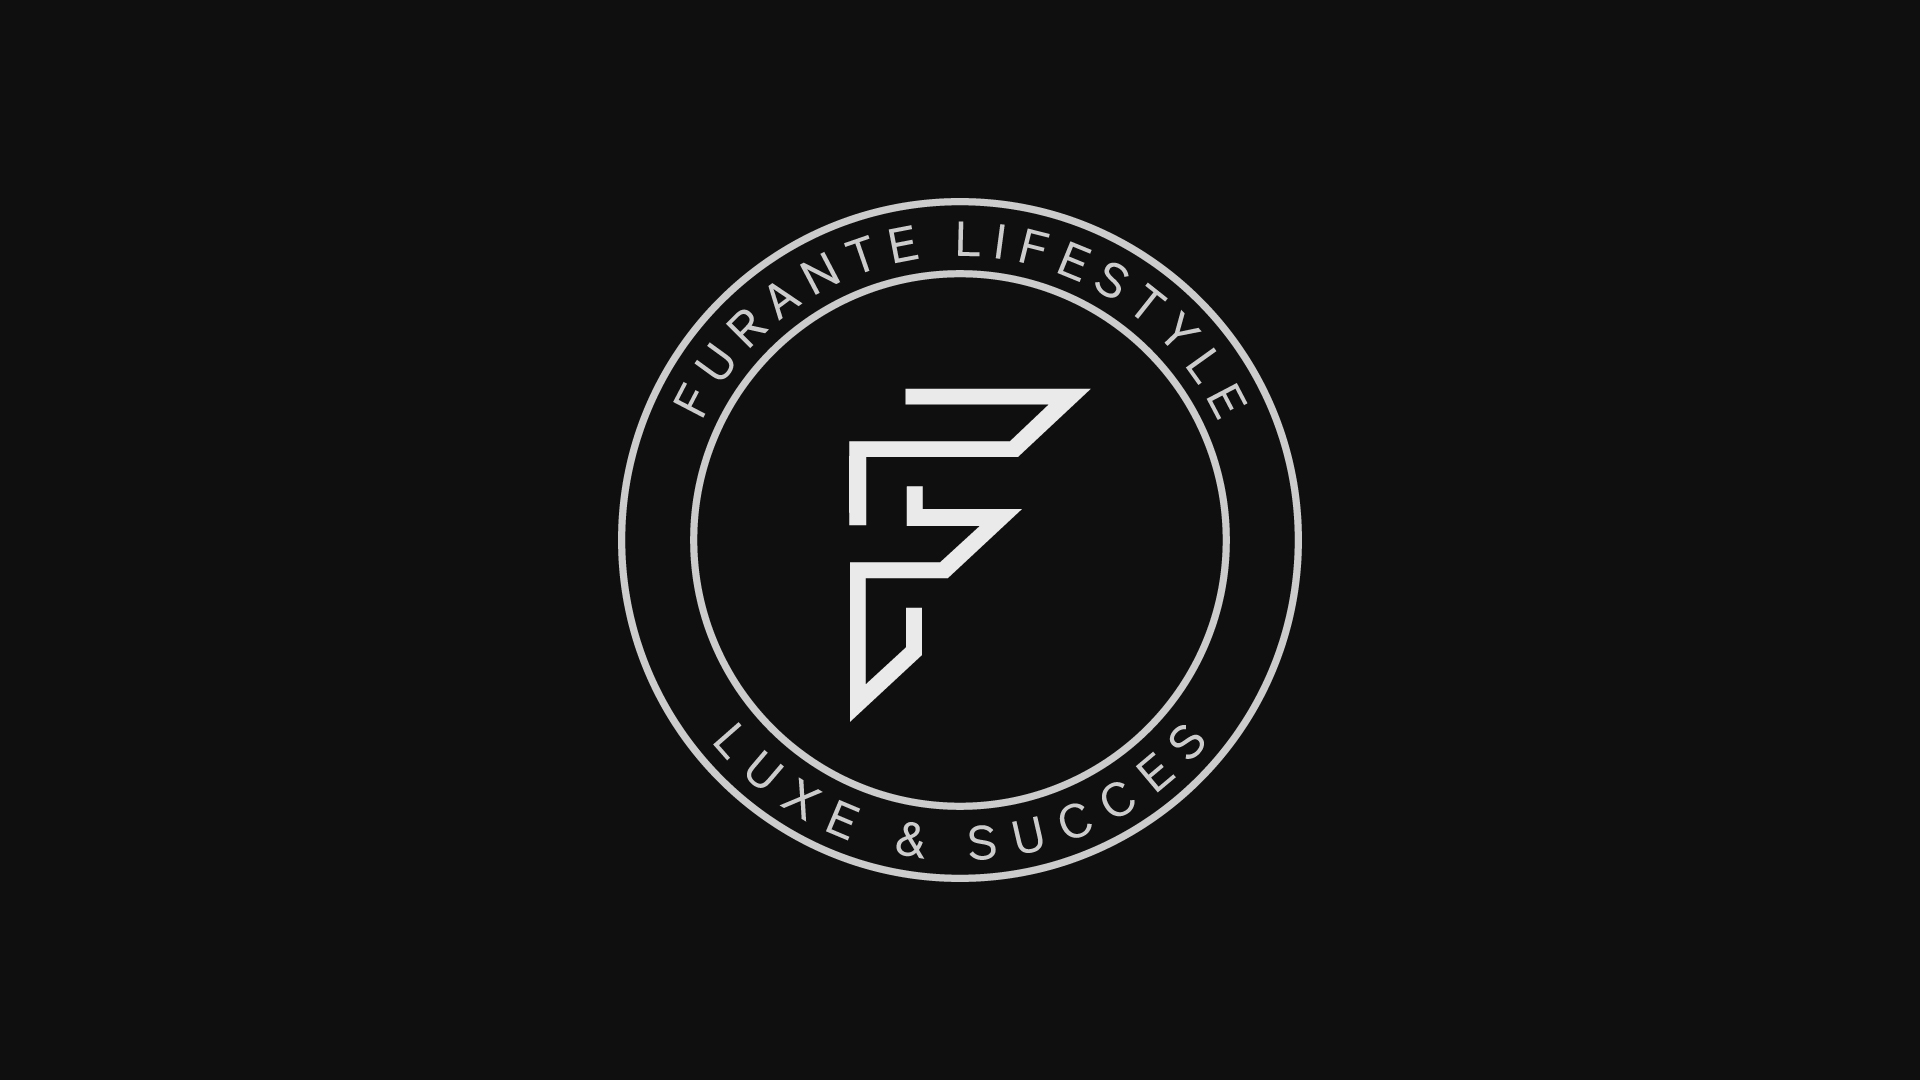 Furante Lifestyle – logo